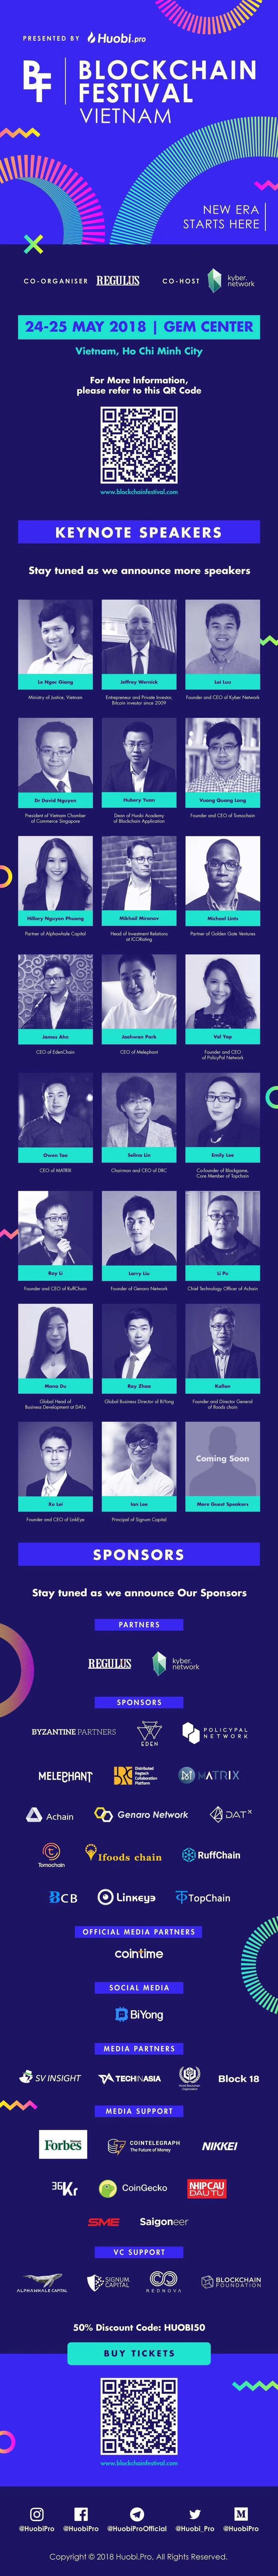 รายงานการพัฒนาอุตสาหกรรมบล็อกเชนทั่วโลกในช่วงครึ่งปีแรกของปี 2561 จะได้รับการเปิดเผยเป็นครั้งแรก ที่งาน Blockchain Festival Vietnam วันที่ 24-25 พ.ค. 2561 นำเสนอโดย Huobi Pro